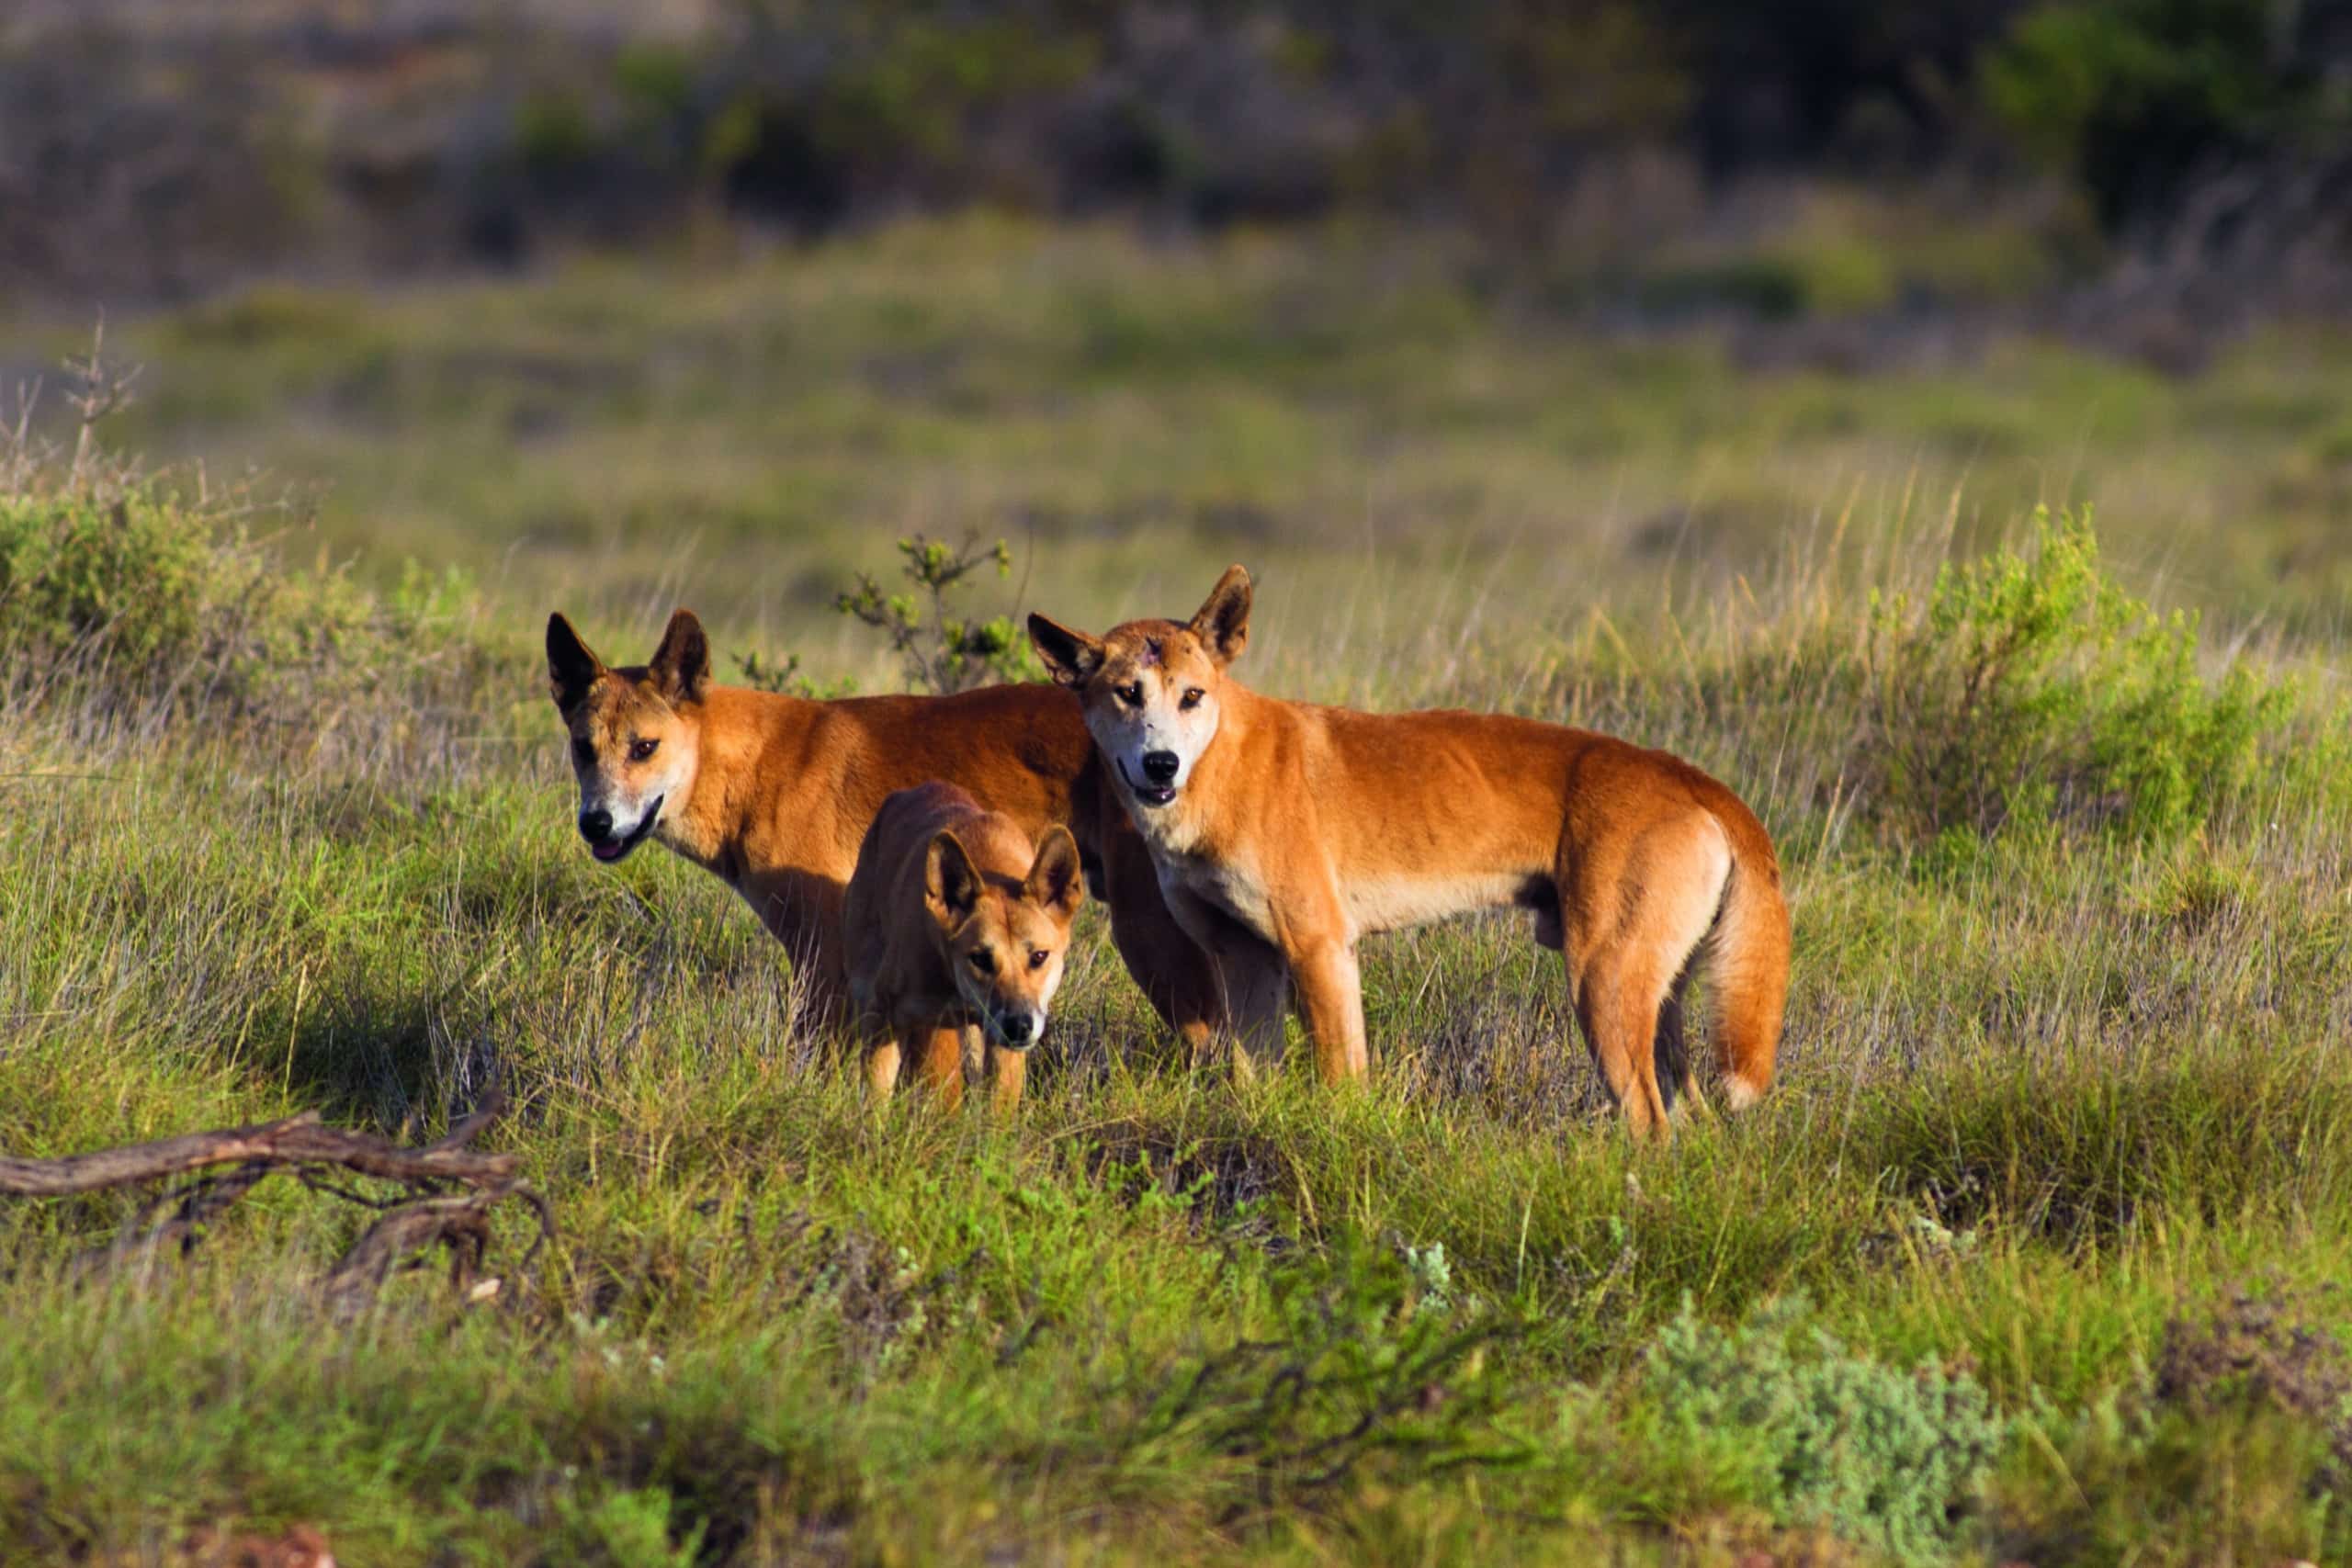 A reprieve for dingoes